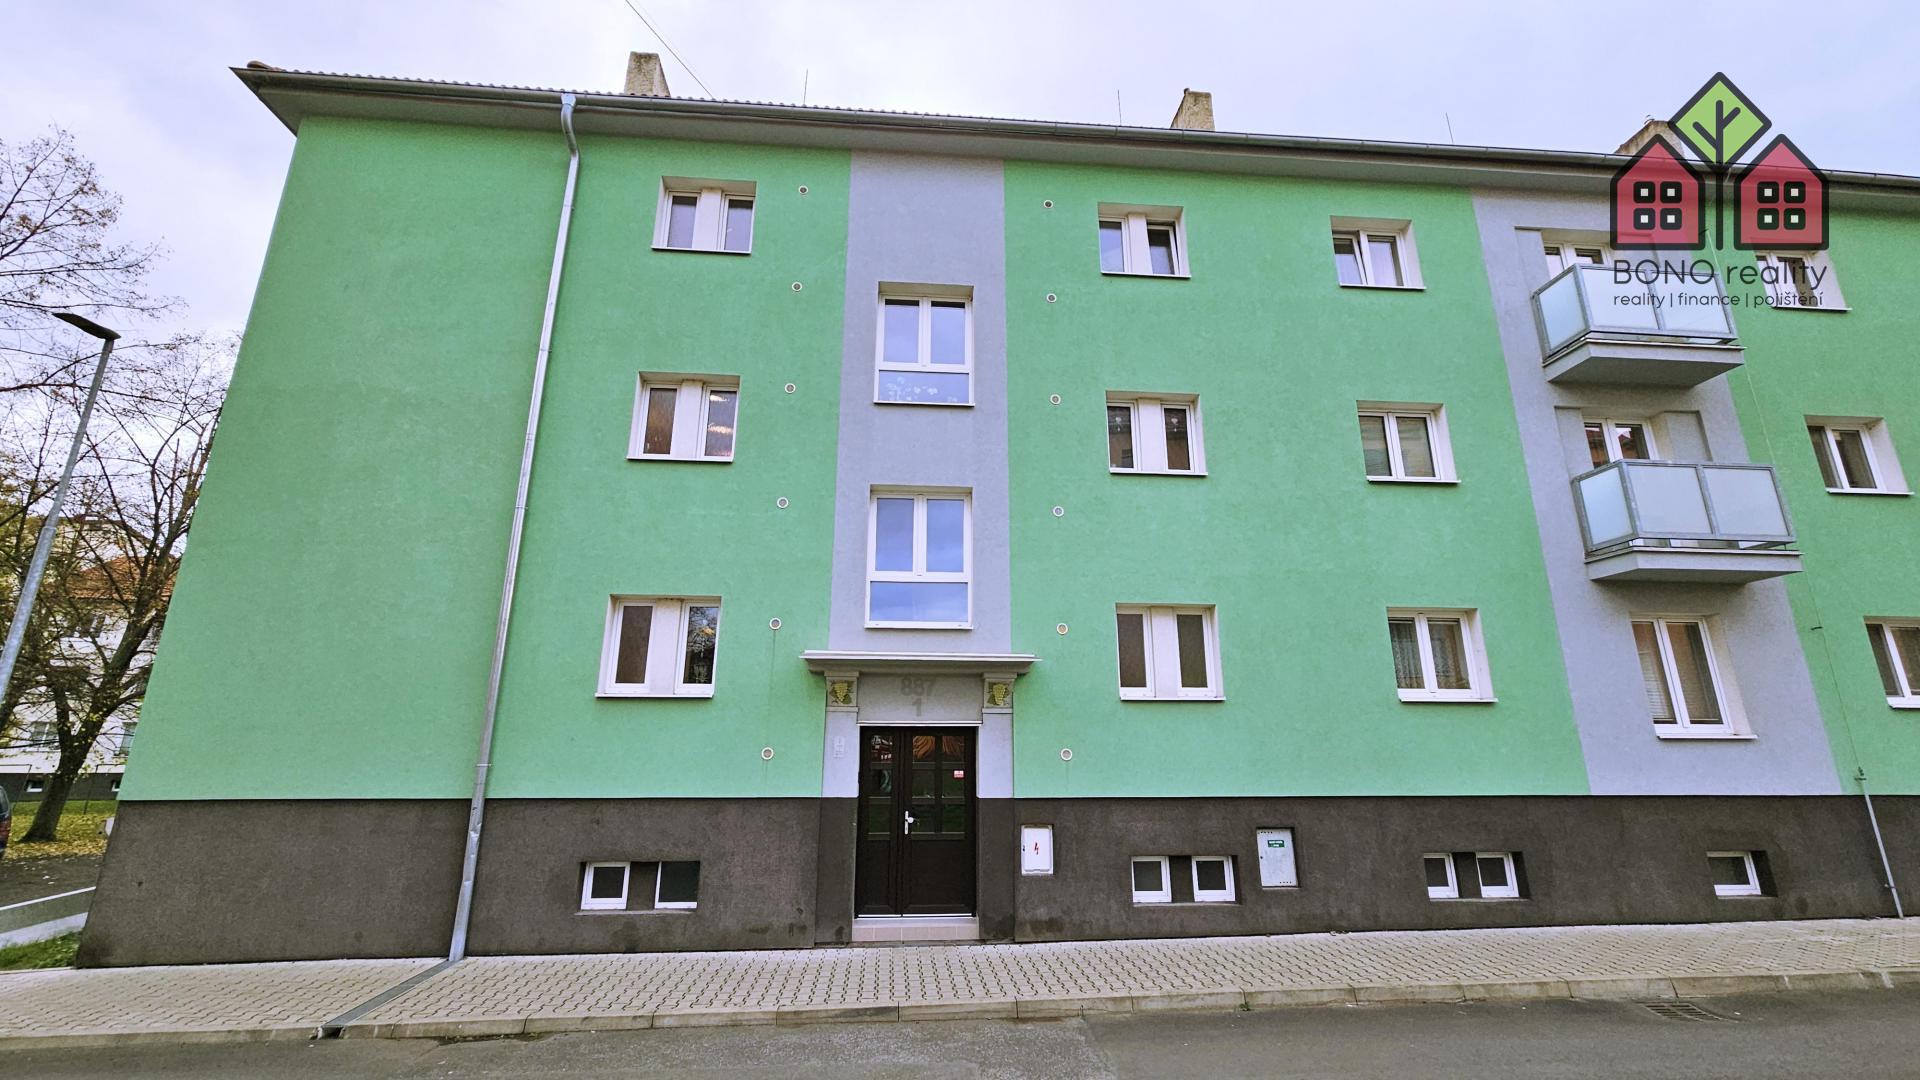 Dlouhodobý pronájem bytu 2+1, 63 m2, balkón, Lovosice, ulice Mírová